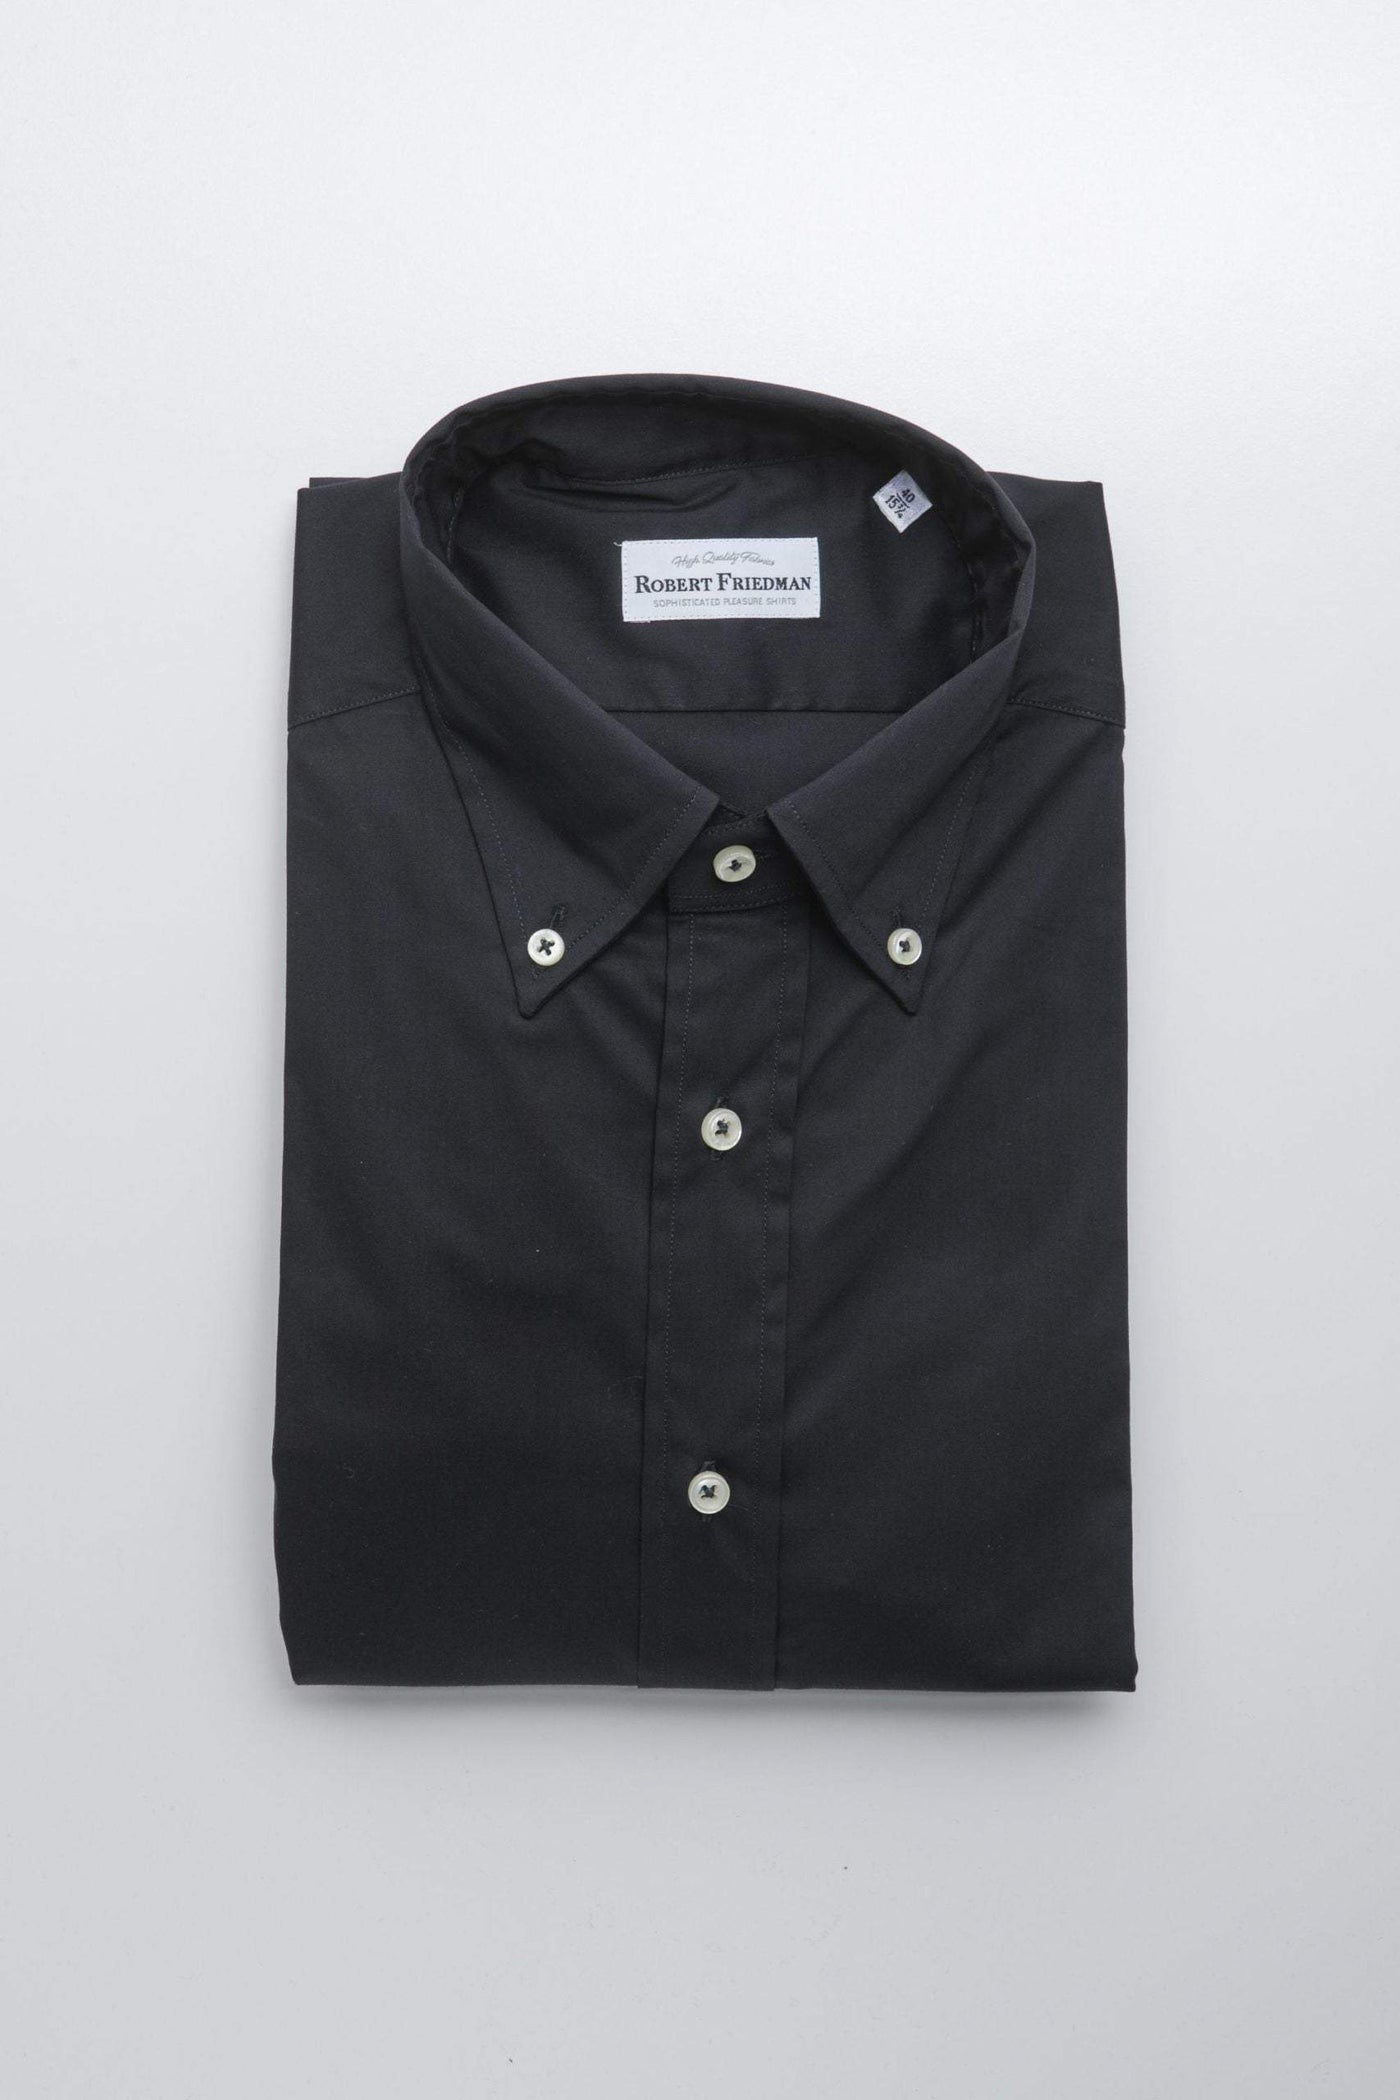 Robert Friedman Black Cotton Shirt #men, Black, feed-1, IT39 | S, IT40 | M, IT41 | L, IT42 | XL, IT43 | 2XL, IT44 | 3XL, Robert Friedman, Shirts - Men - Clothing at SEYMAYKA